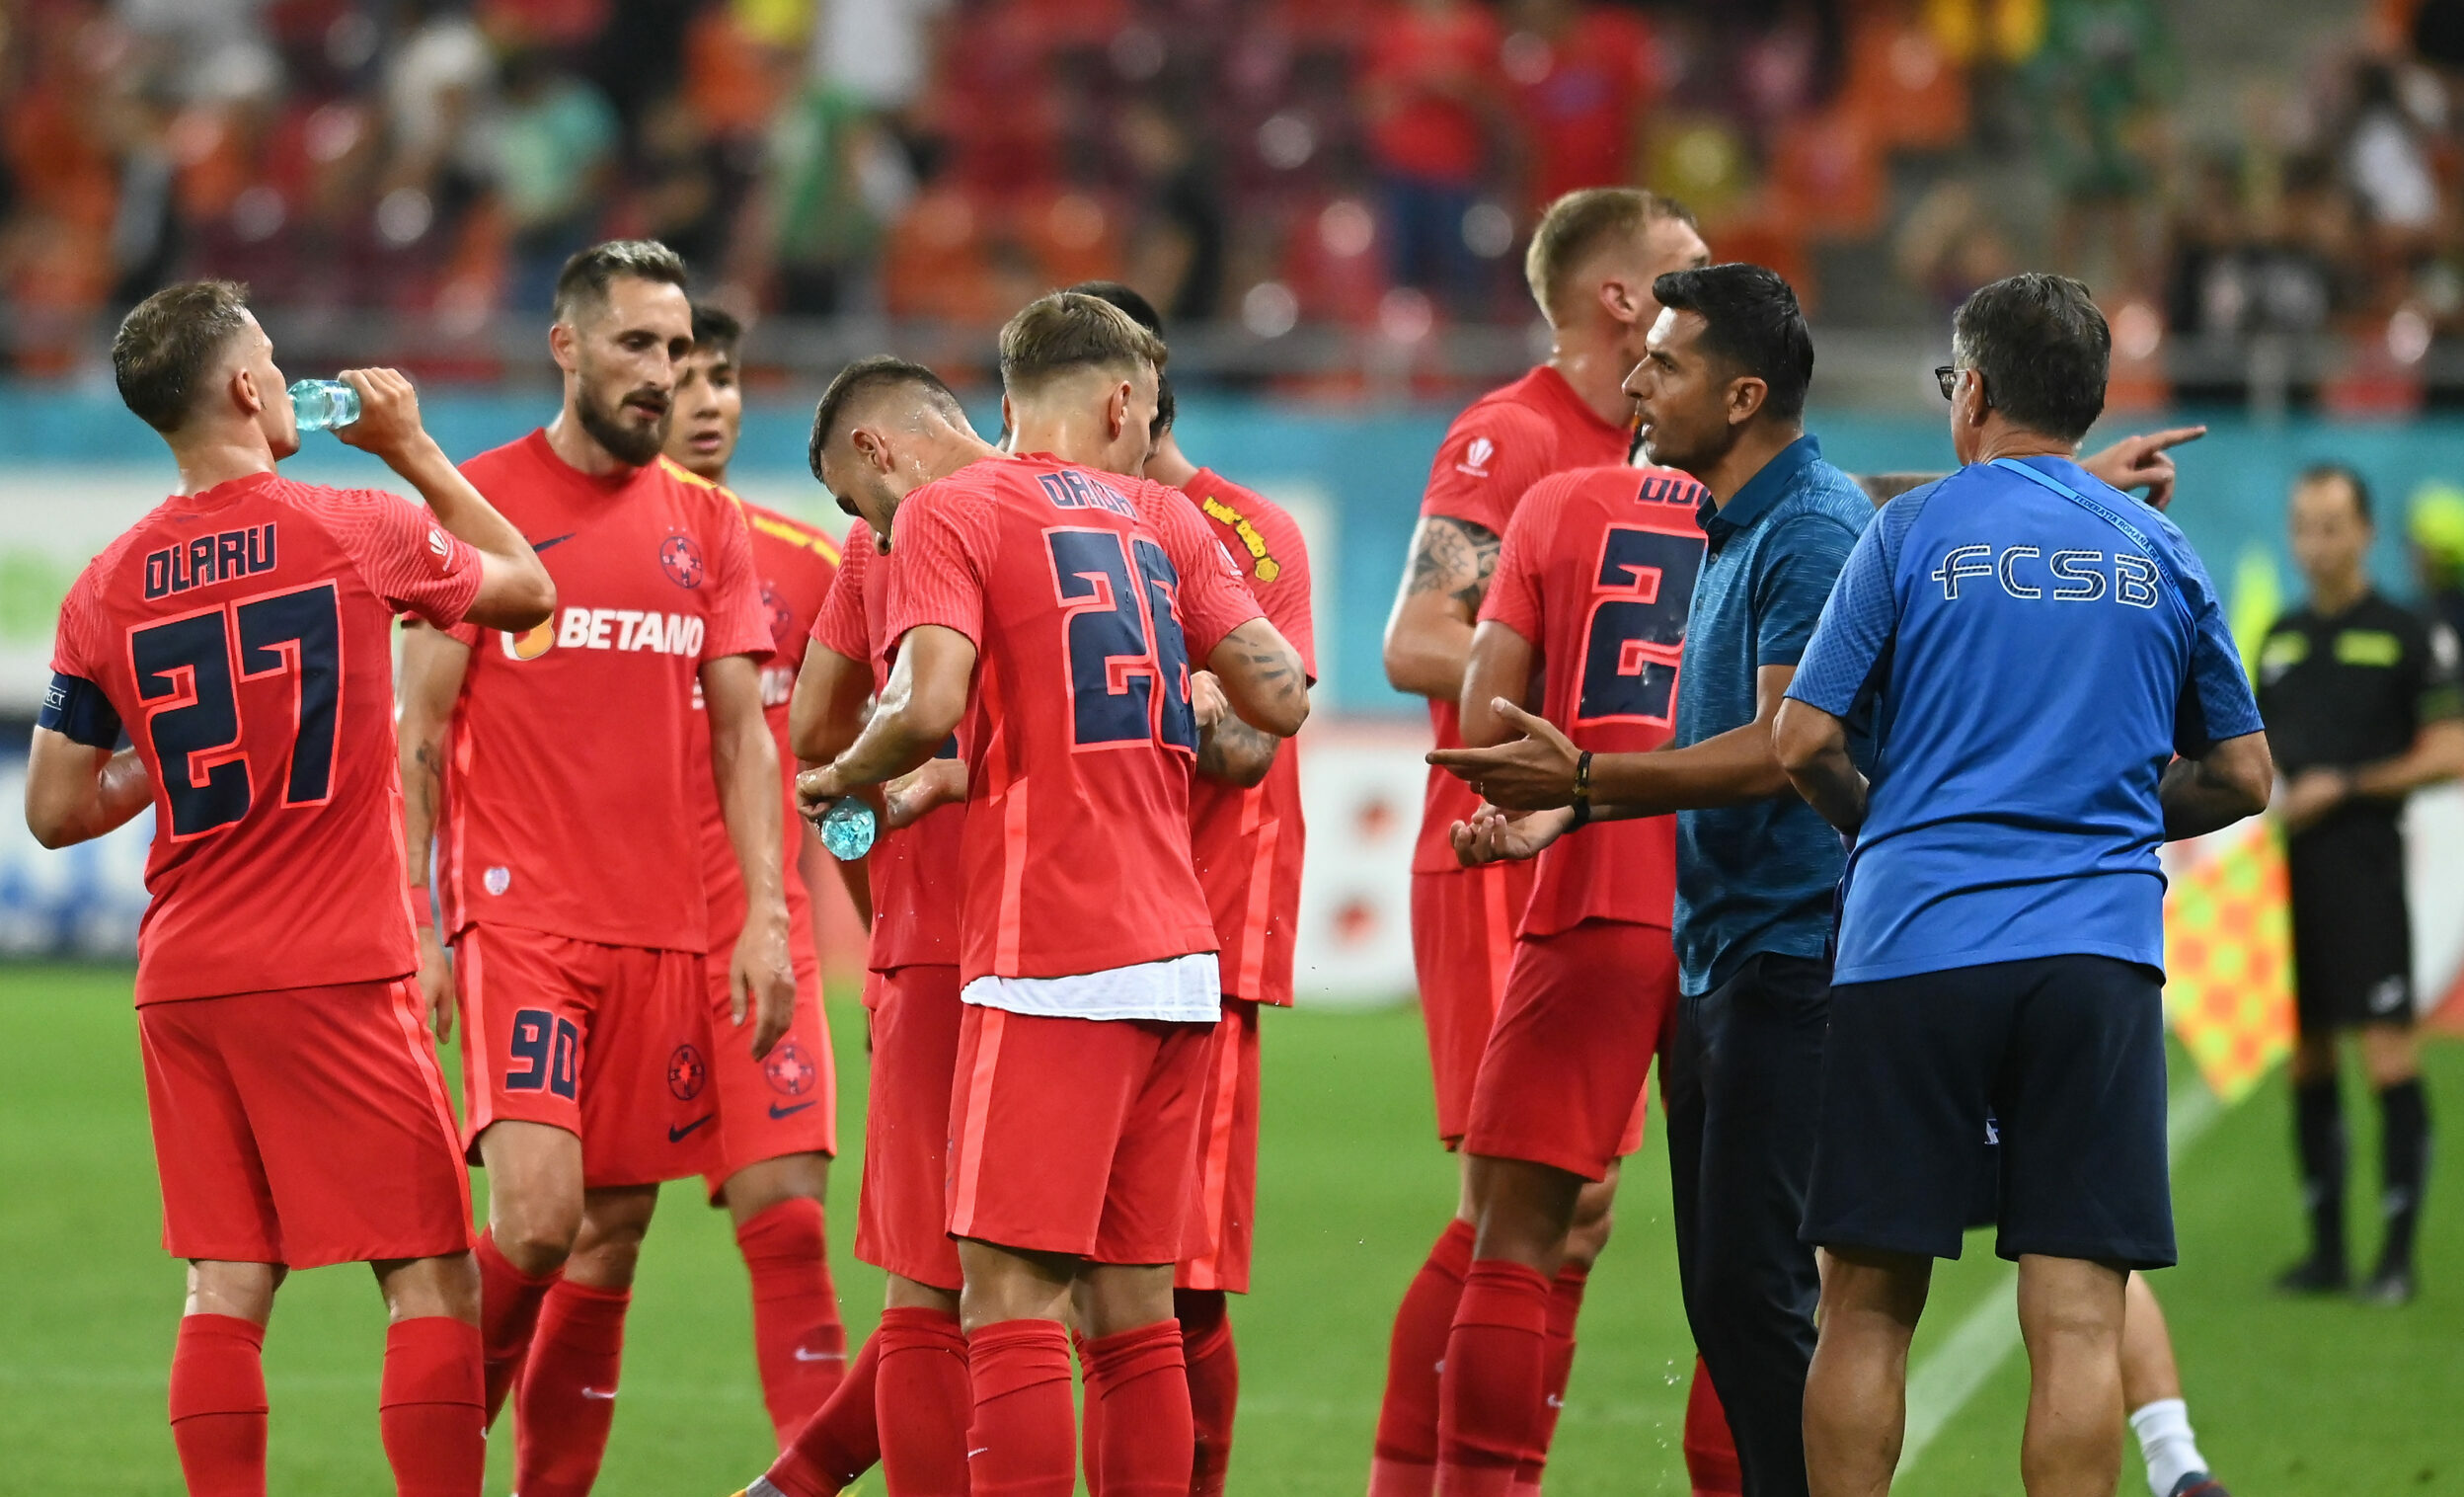 Şapte fotbalişti OUT de la FCSB. Decizie radicală luată de Gigi Becali după ultimul meci: "Nu mă interesează"